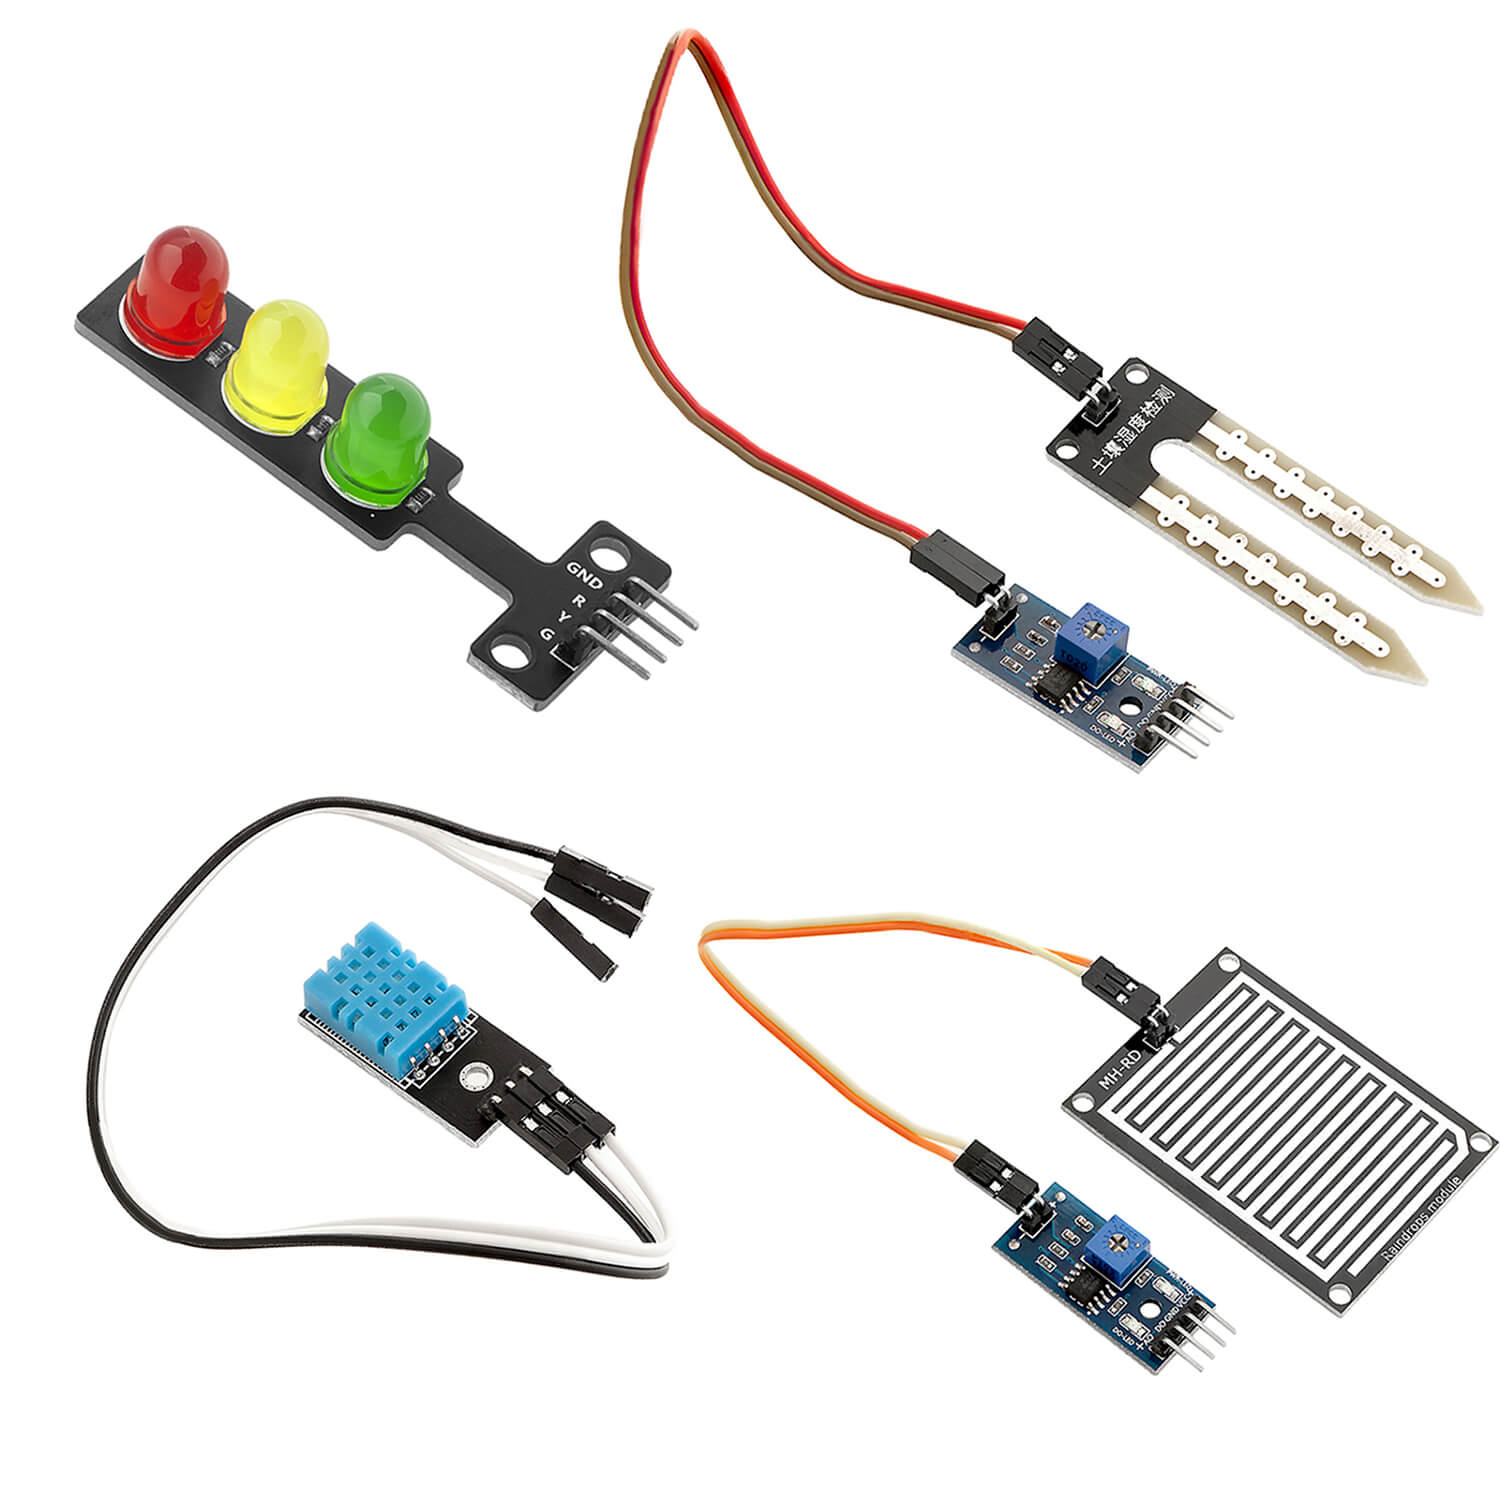 16 in 1 Kit Zubehörset mit Sensoren und Modulen für Raspberry Pi kompatibel mit Arduino